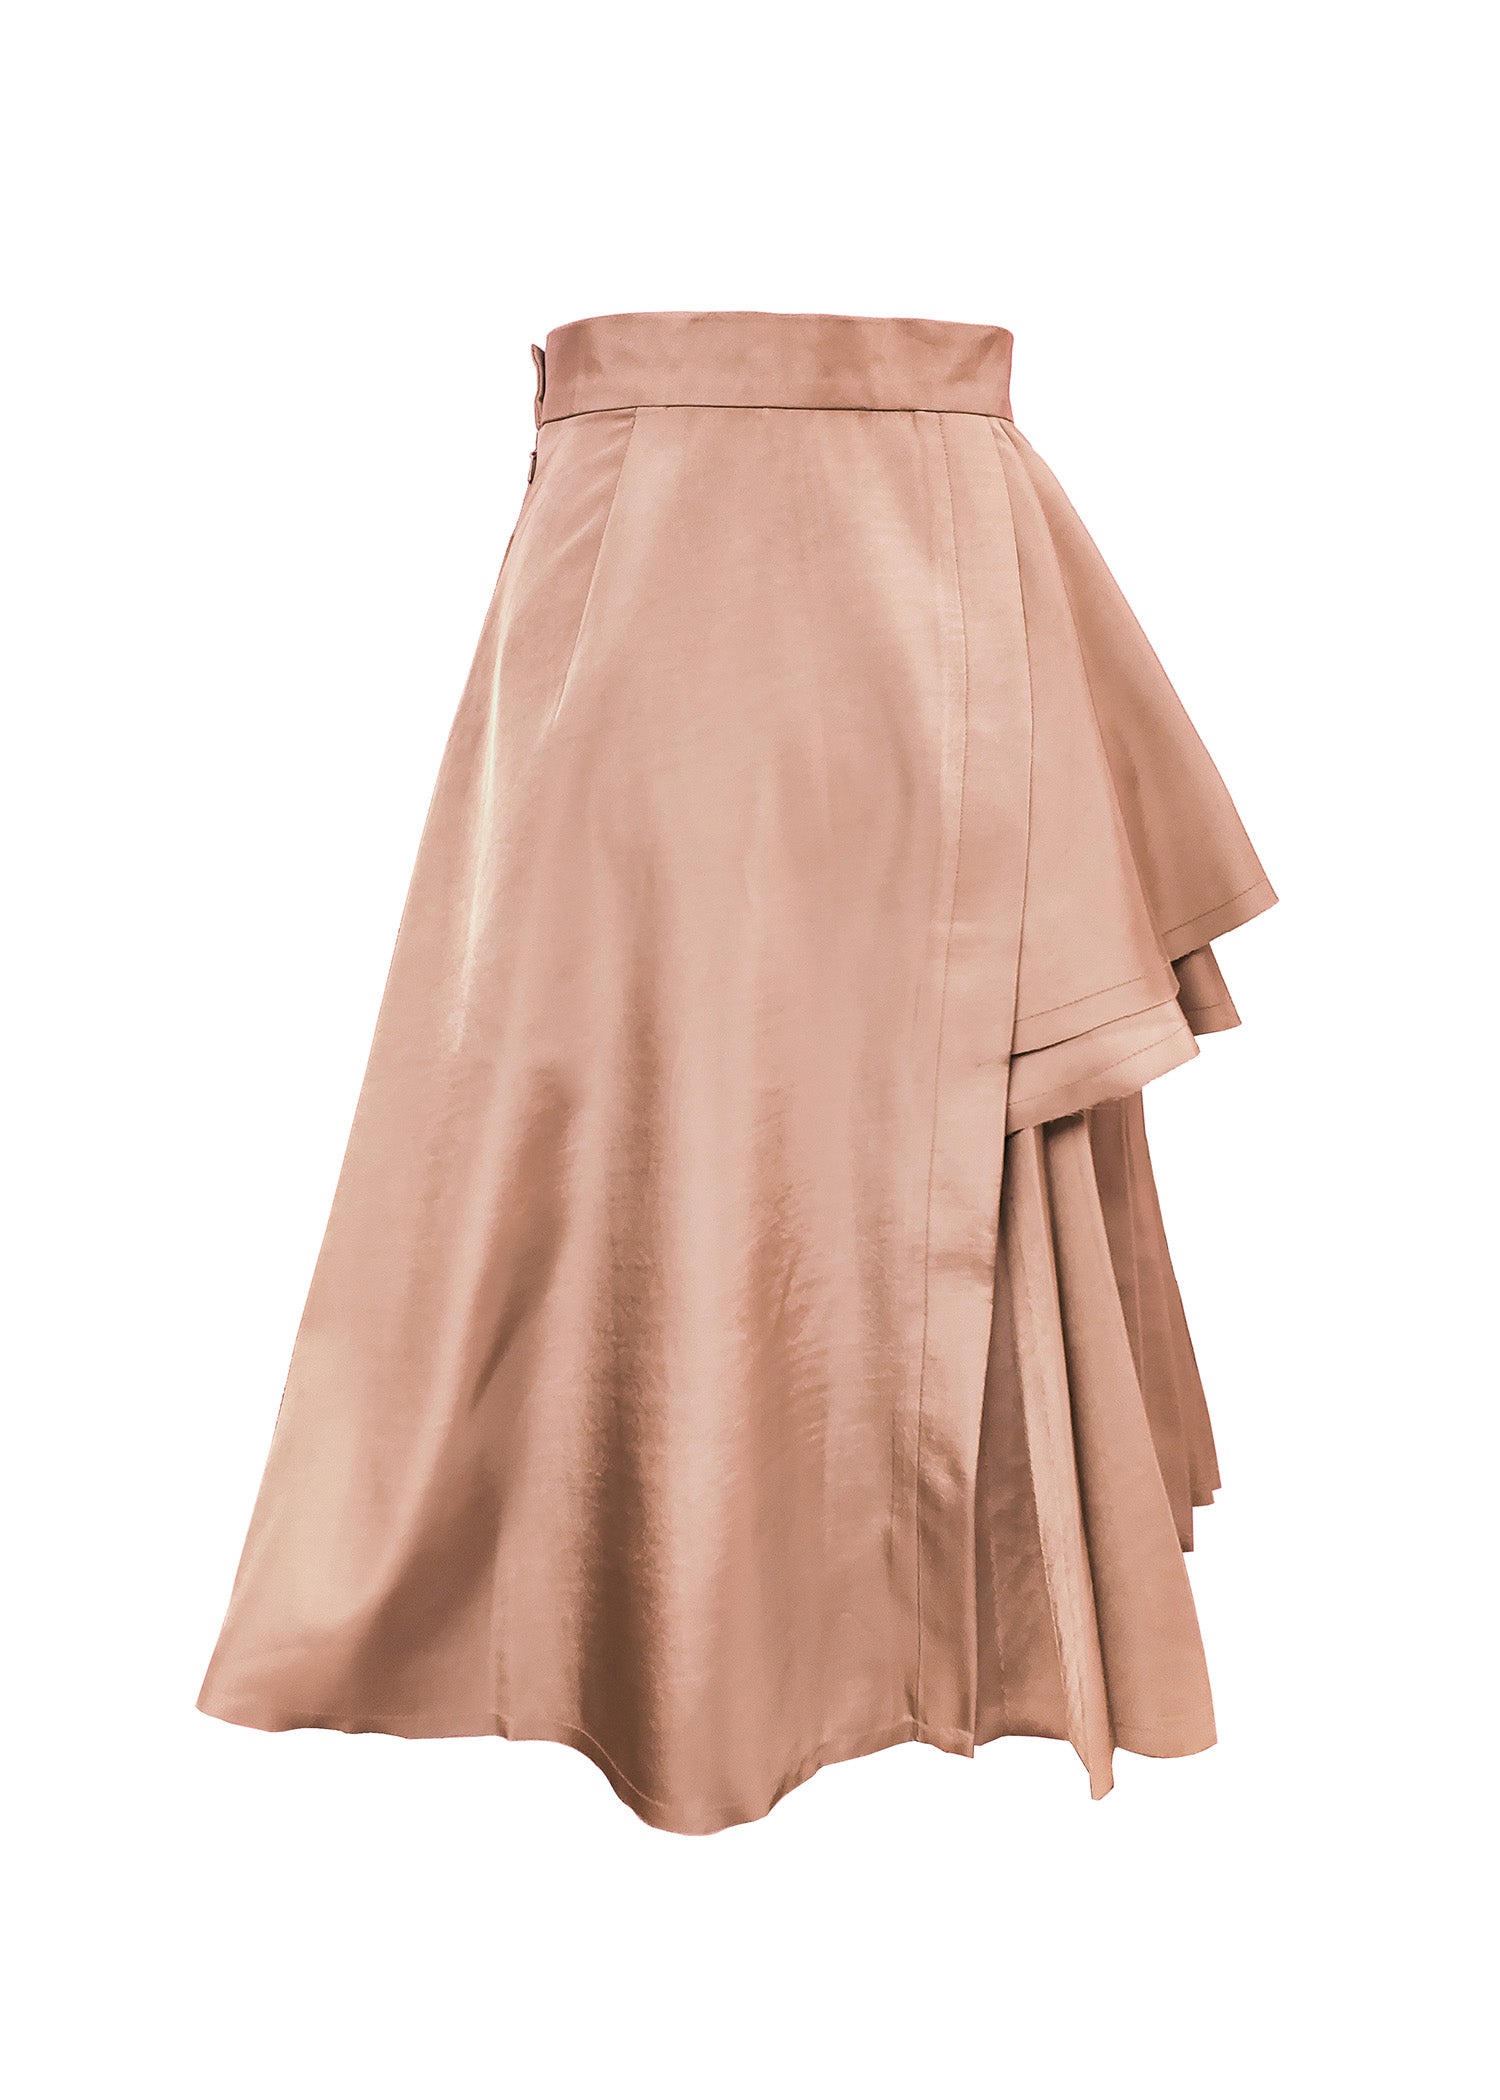 Women's Skirt - Aelios Skirt